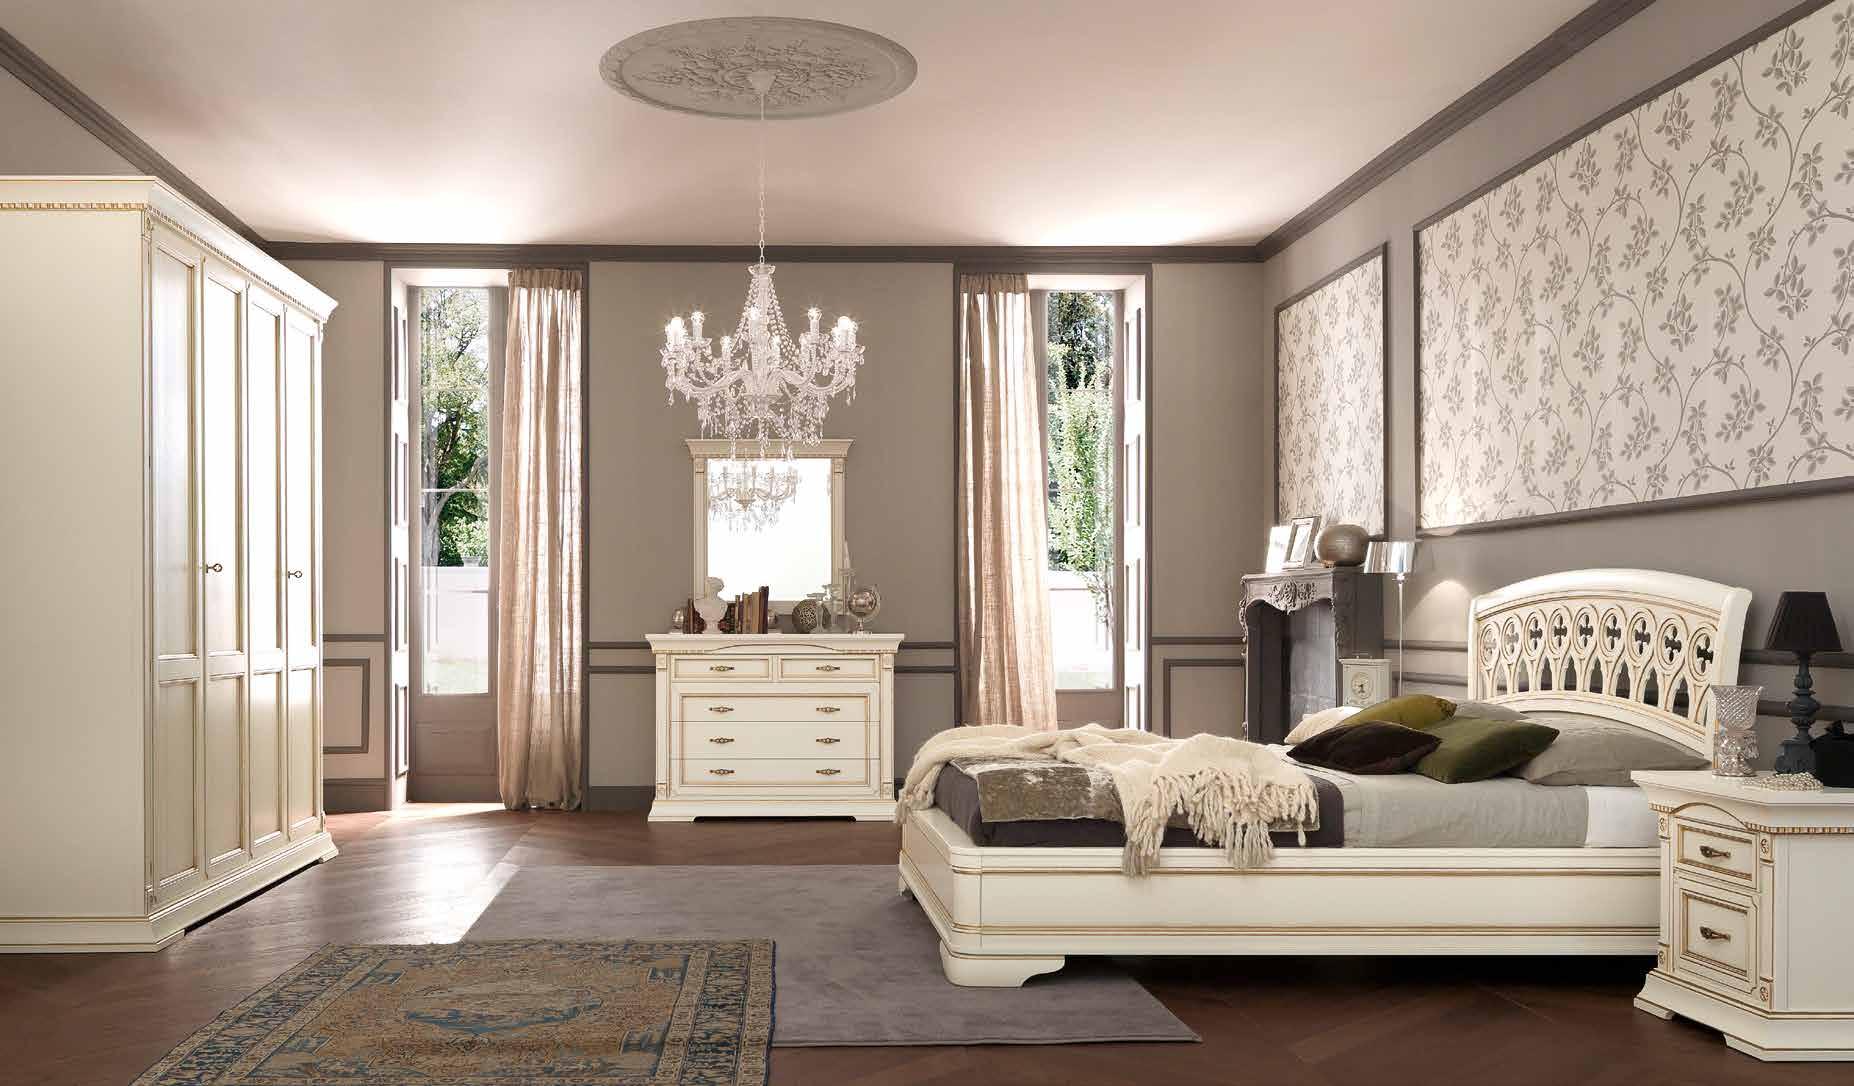 Кровать Prama Palazzo Ducale laccato, двуспальная, без изножья, цвет: белый с золотом, 160x200 см (71BO24LT)71BO24LT